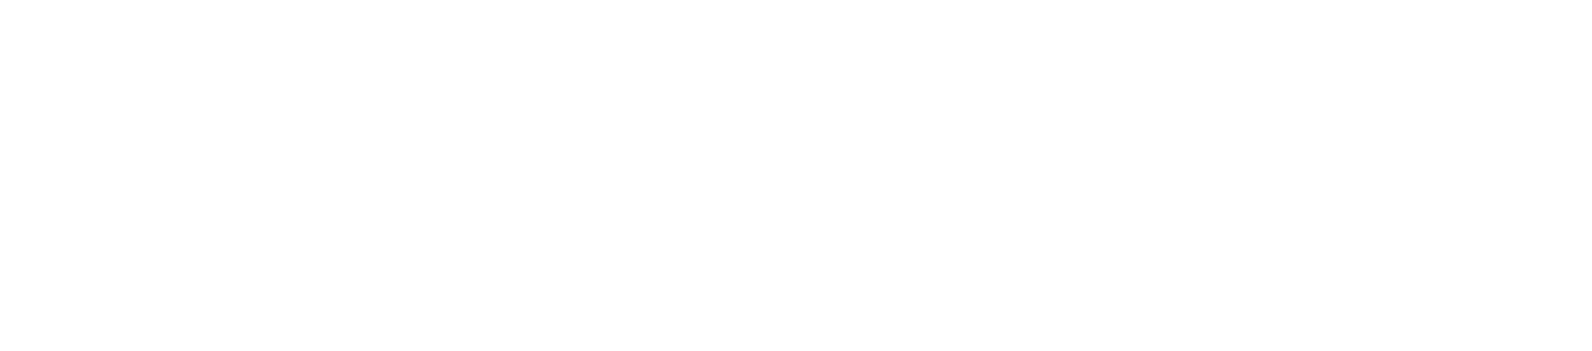 Zillow logo grand pour les fonds sombres (PNG transparent)